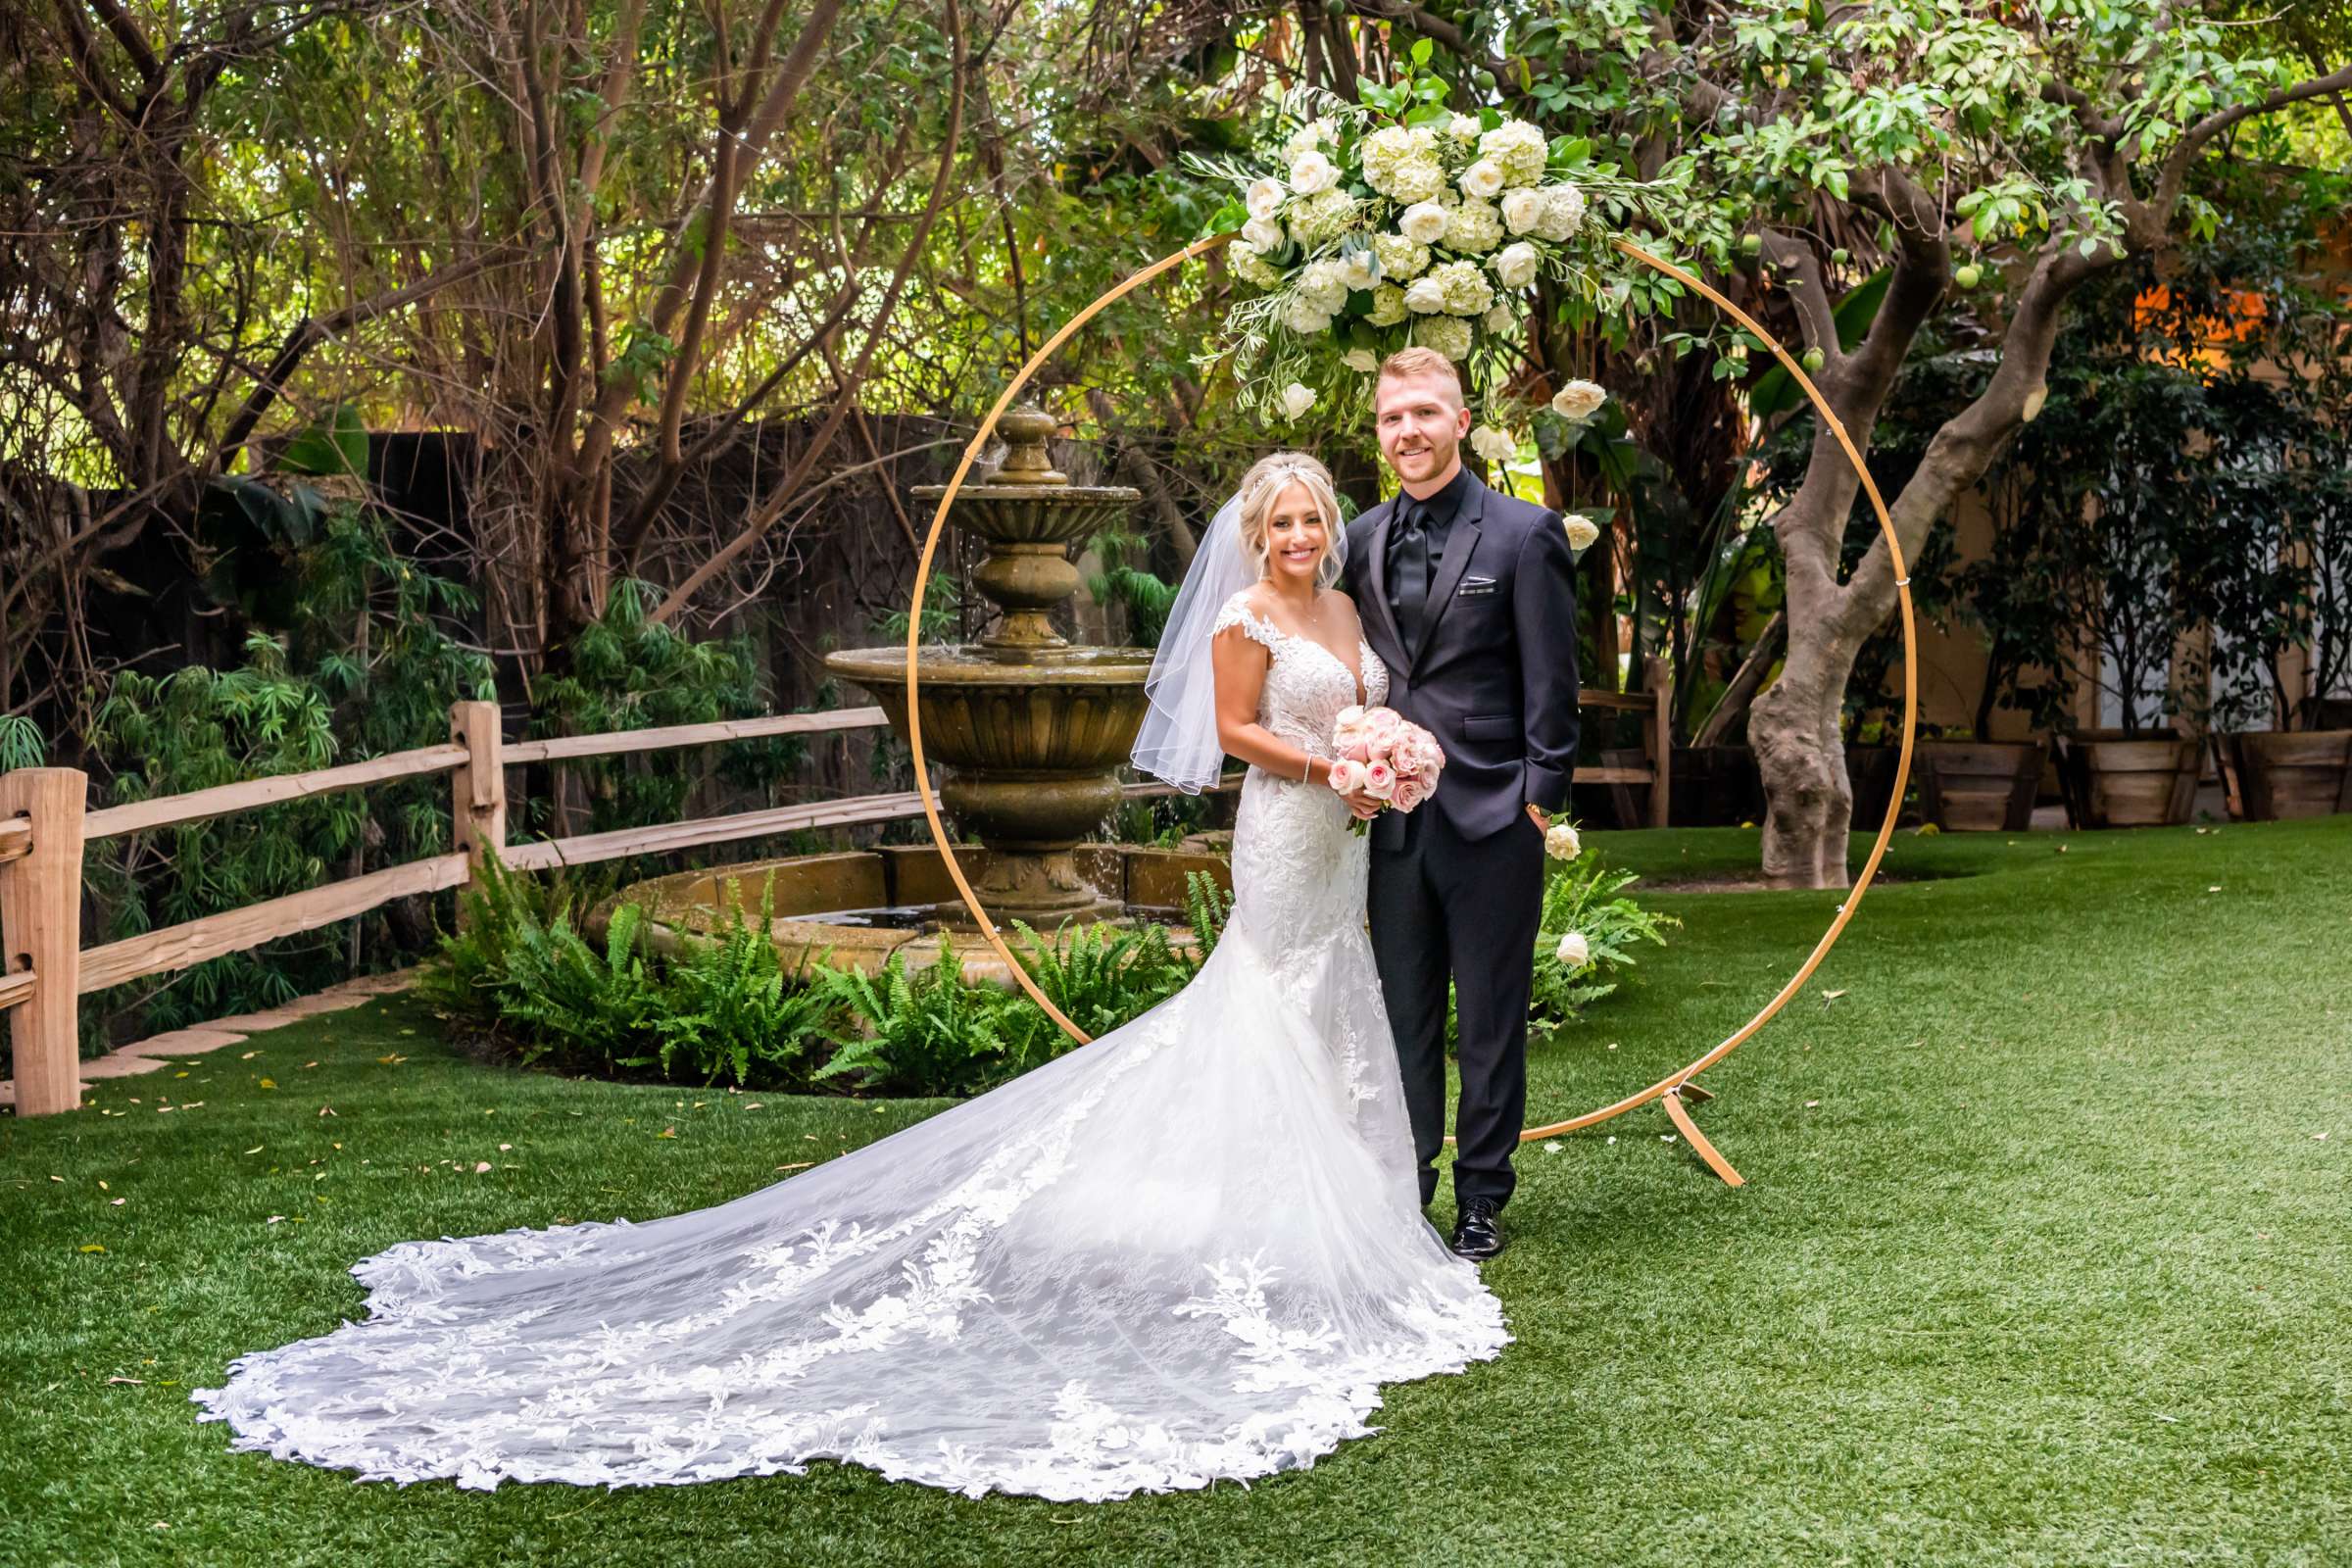 Green Gables Wedding Estate Wedding, Tiffanie and Daniel Wedding Photo #17 by True Photography